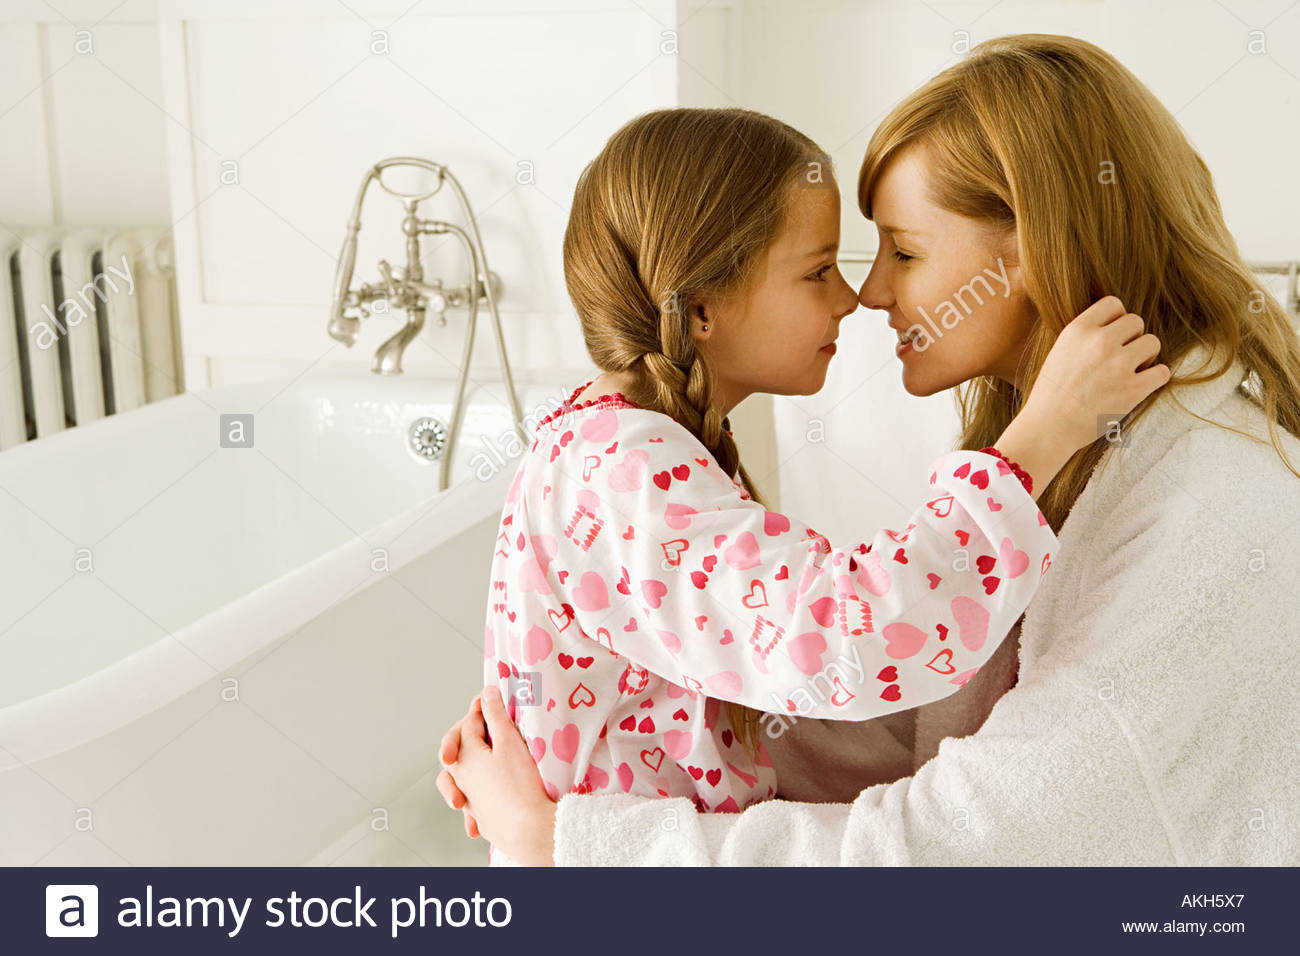 Daughter bath. Дочь отражение матери. Пубертатный период у девочек фото. Мама и дочь поют. Фото дочь как отражение мамы.